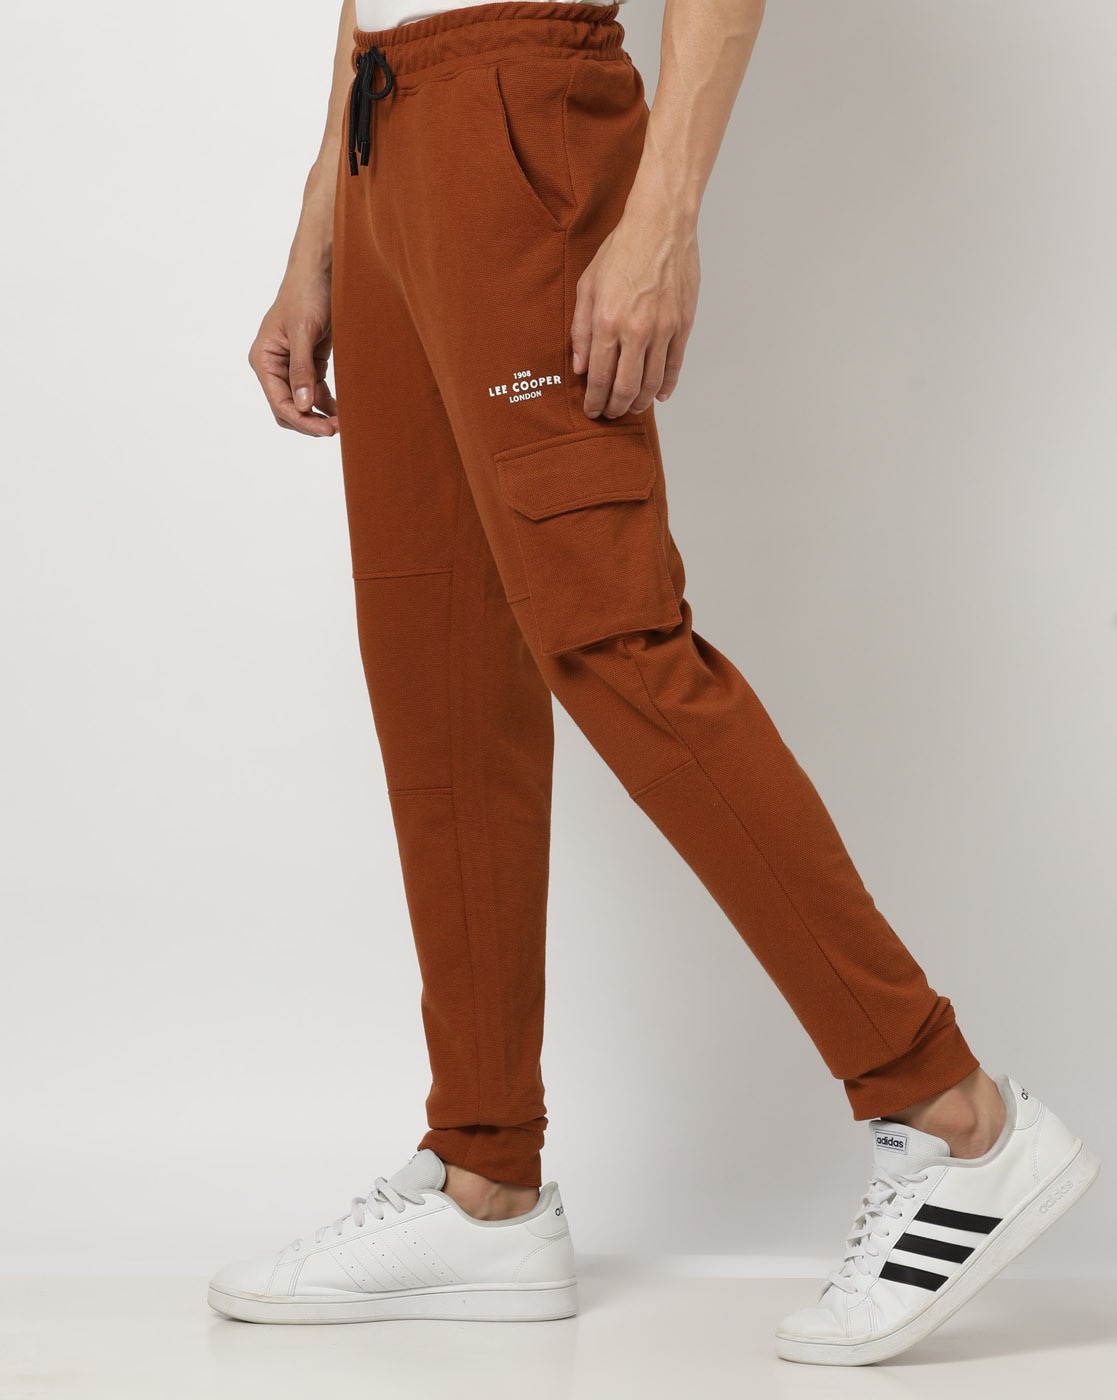 Lee Cooper - Pantalon De Jogging fille imprimé logo - Rose - Kiabi - 19.90€